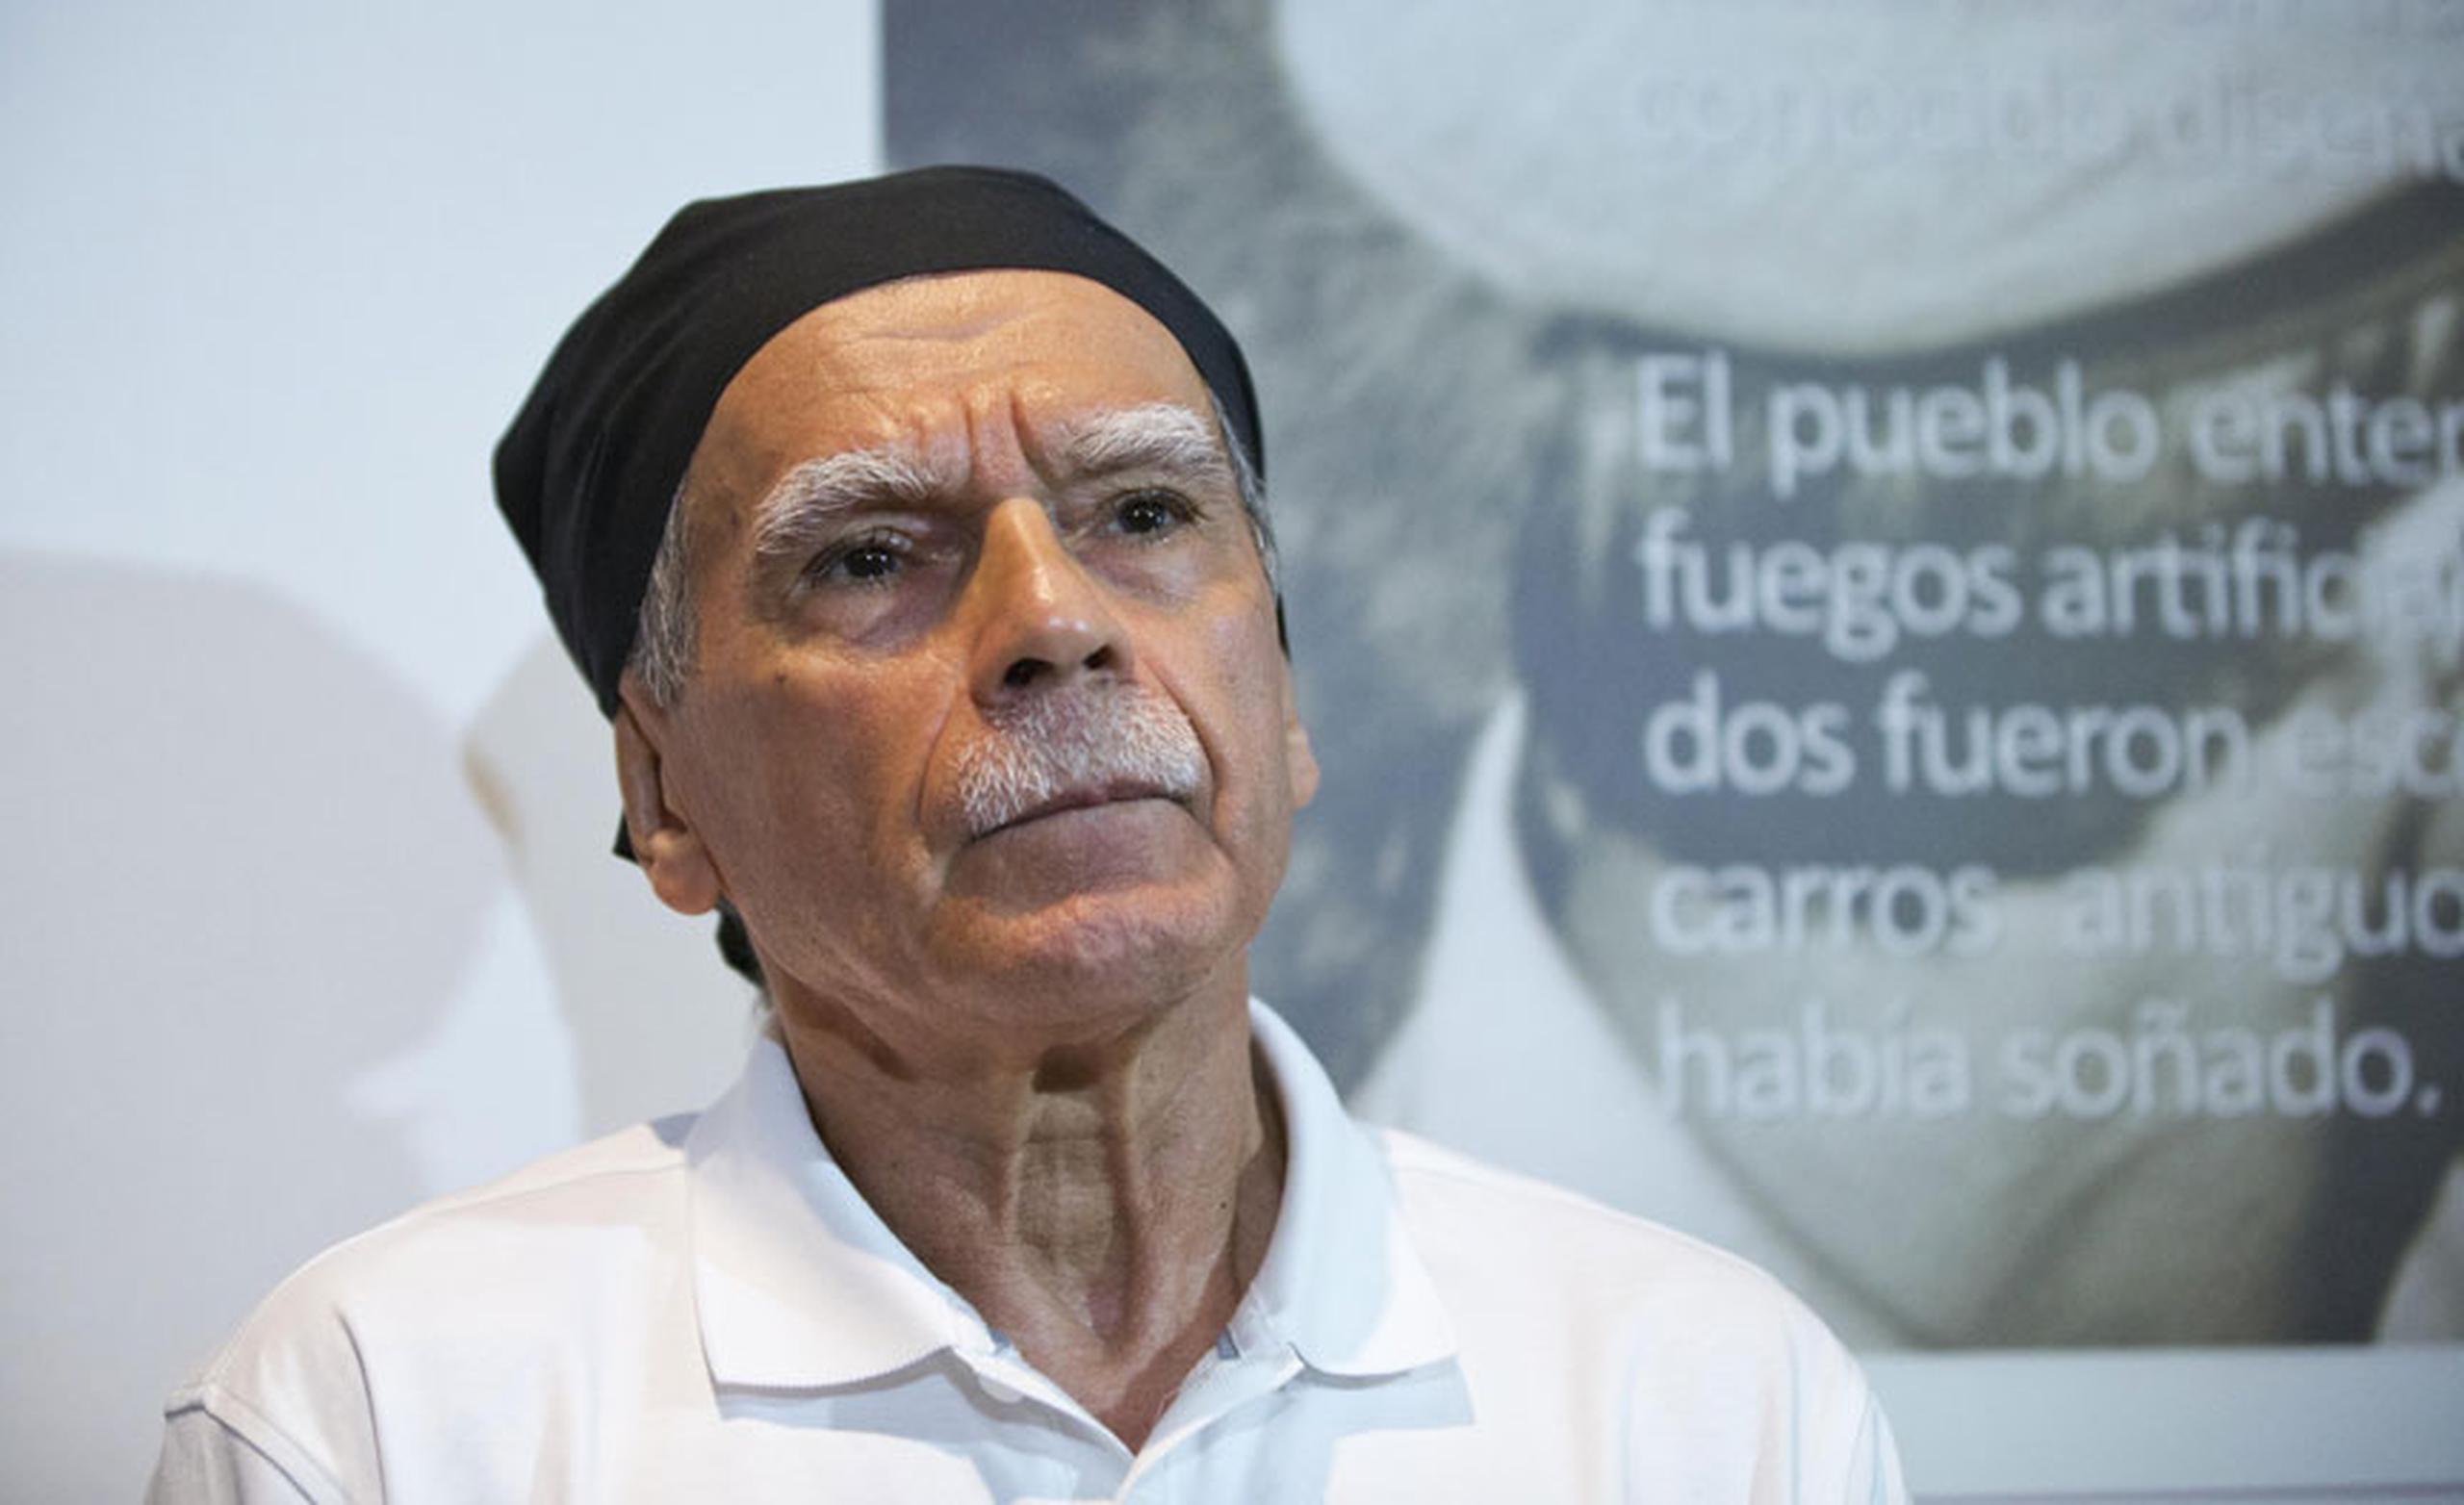 López Rivera, 74 pasó 35 años preso, por el delito de conspiración sediciosa, pero siempre ha negado tener "sangre en las manos". (Archivo)